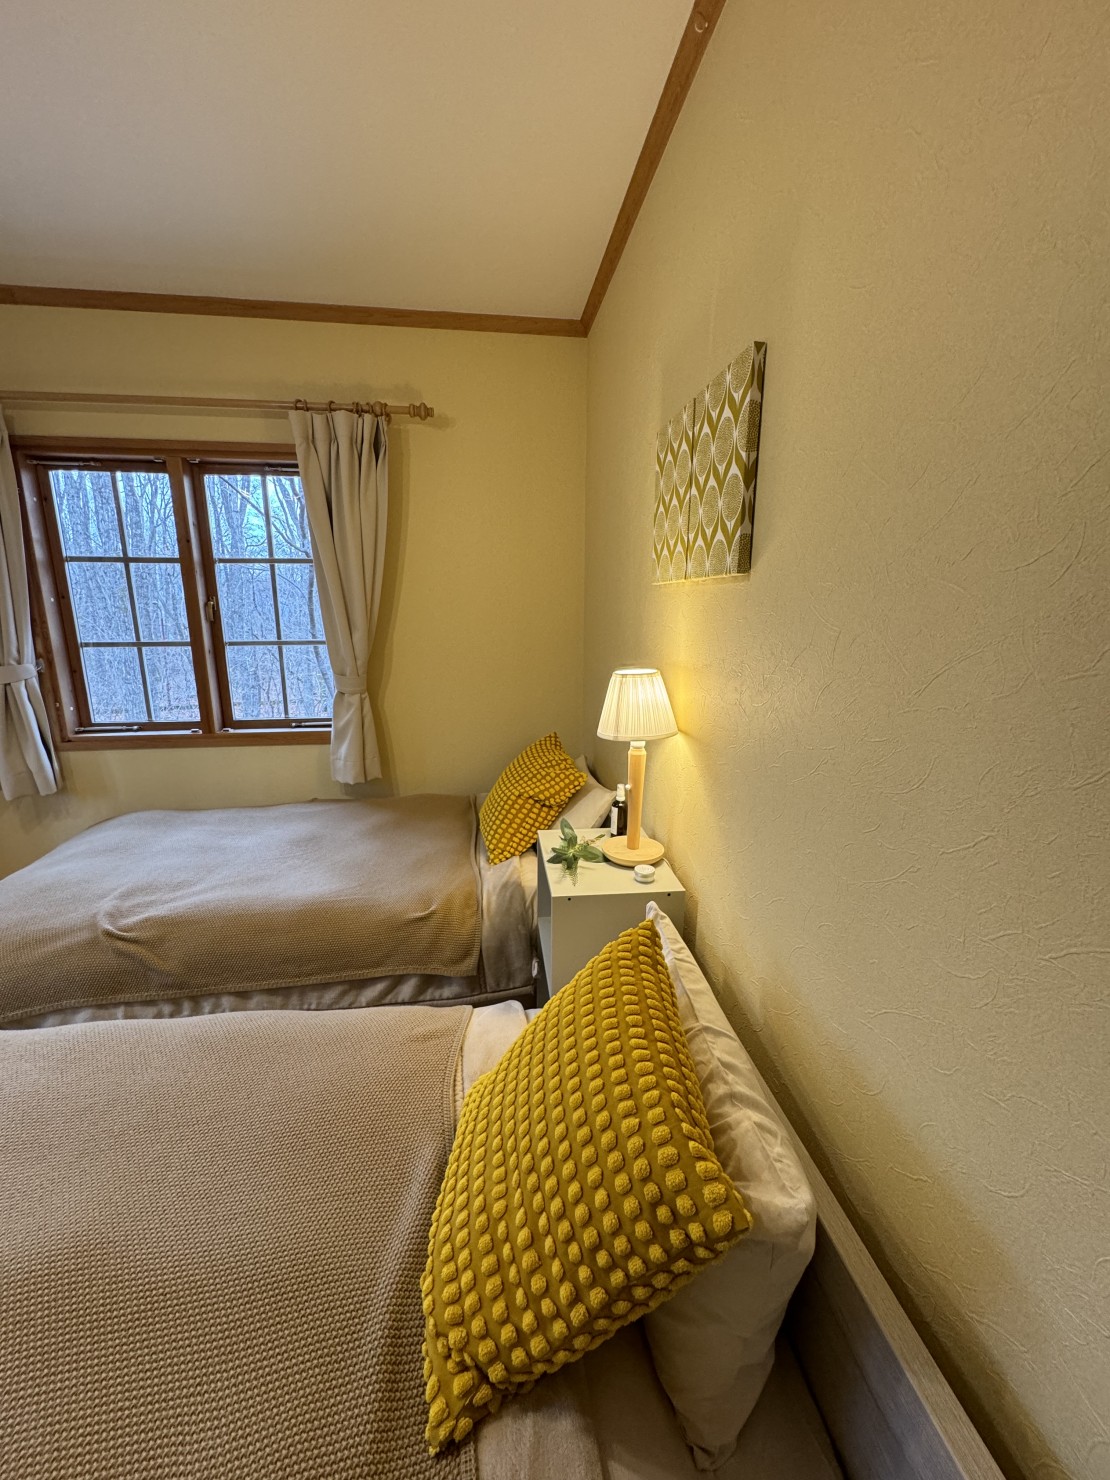 Second House sch-sch（スクスク）｜群馬県・万座・嬬恋・北軽井沢｜寝室❷には、小さなお子様でも安心して使っていただける低めのベッドを2つご用意いたしました。